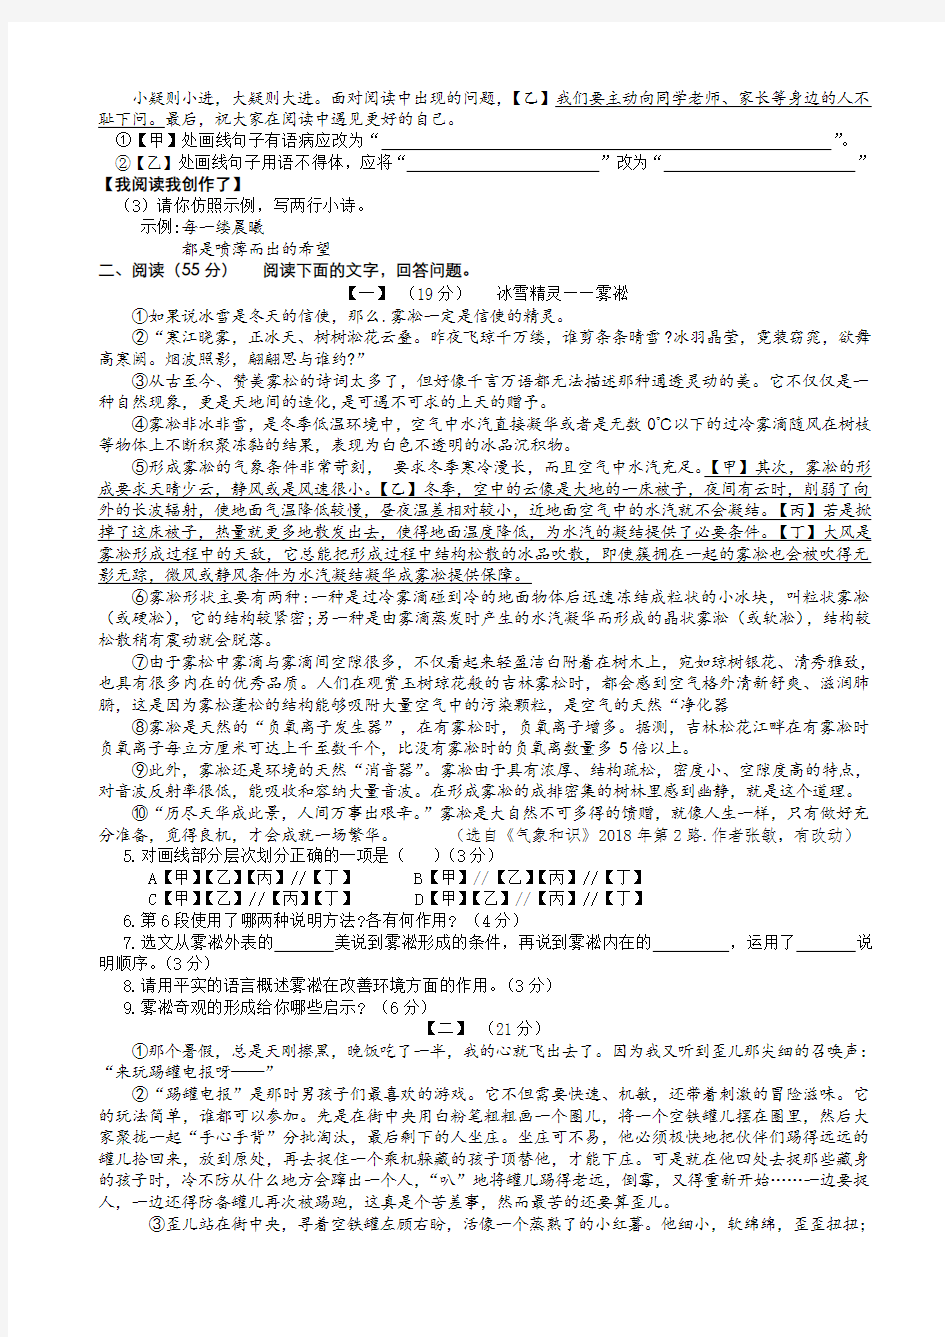 中考-安徽省2018年中考语文试卷(有答案)WORbDb版-试卷AUAnPP